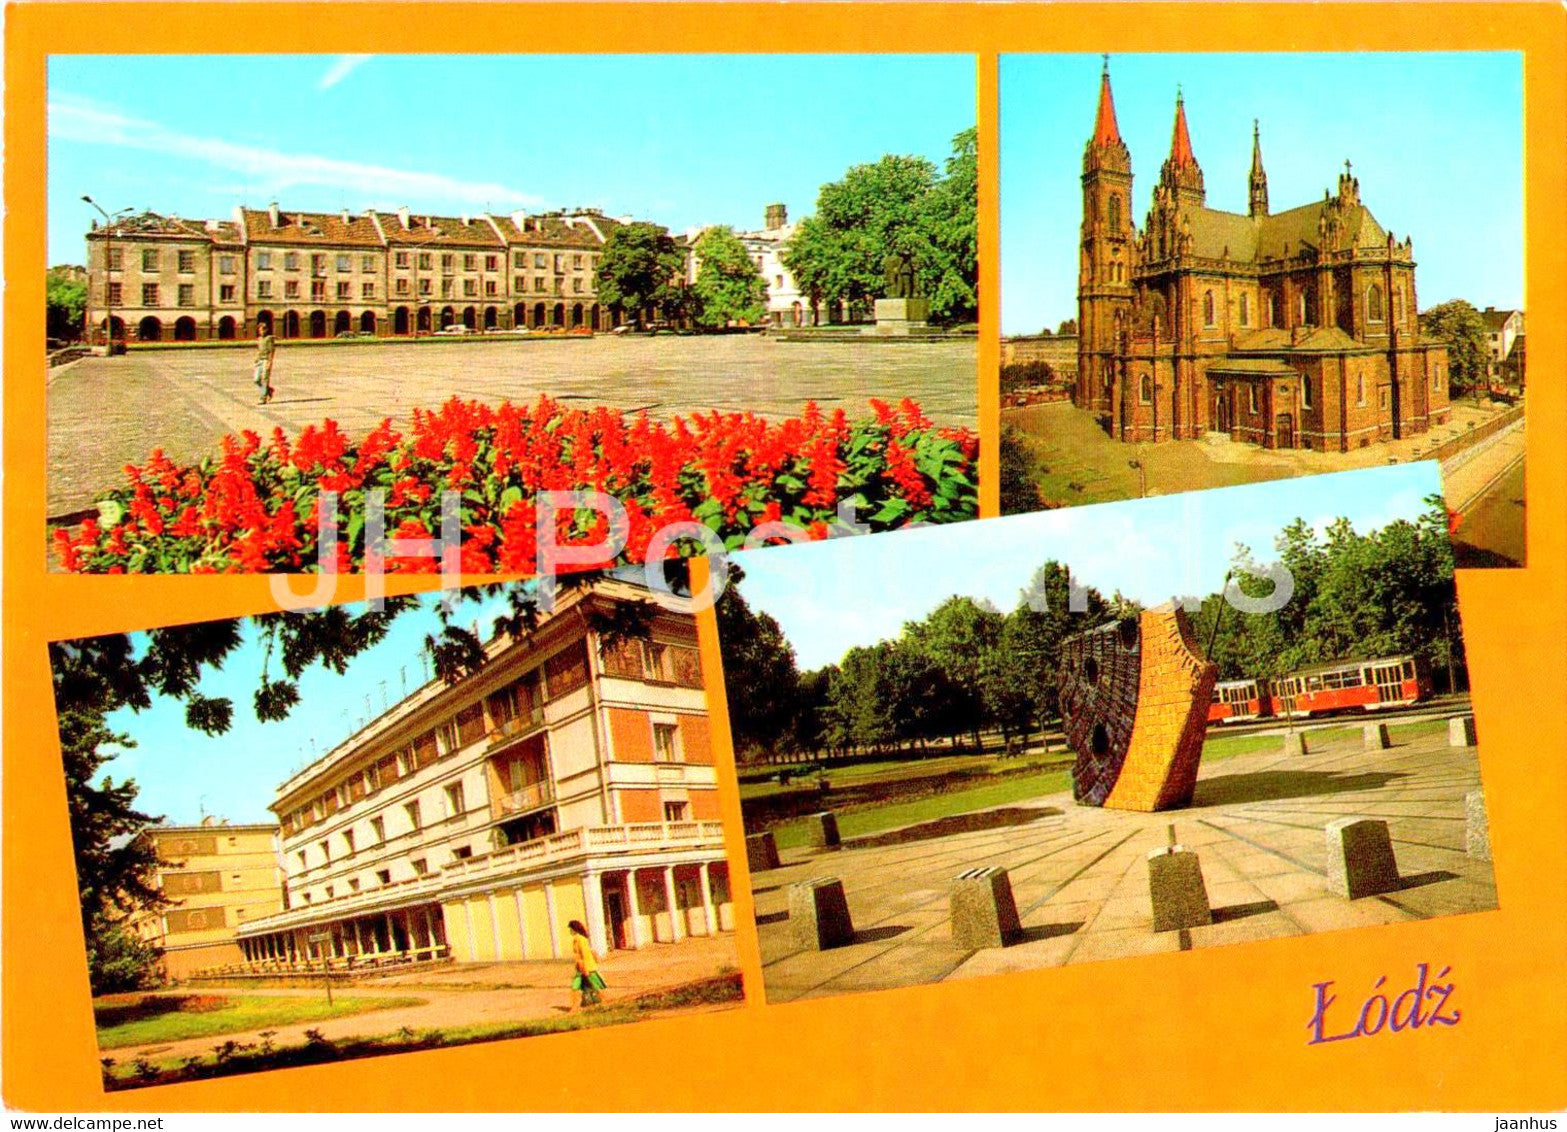 Lodz - Stary Rynek - Kosciol - ulica - Zegar sloneczny - Church - Street - Sundial - multiview - Poland - unused - JH Postcards